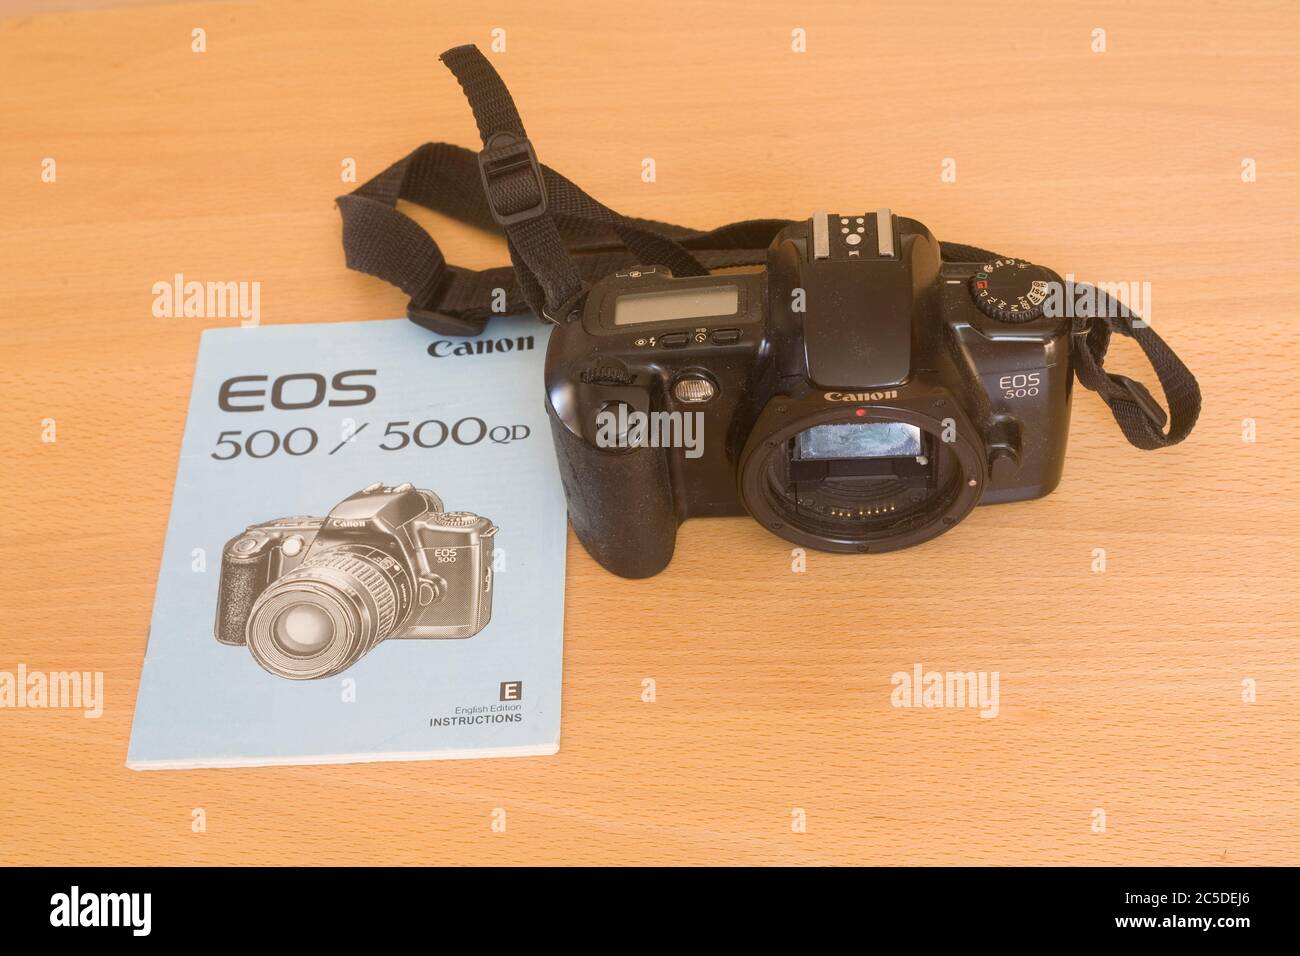 Fotocamera reflex Canon EOS a obiettivo singolo usata e manuale di istruzioni Foto Stock